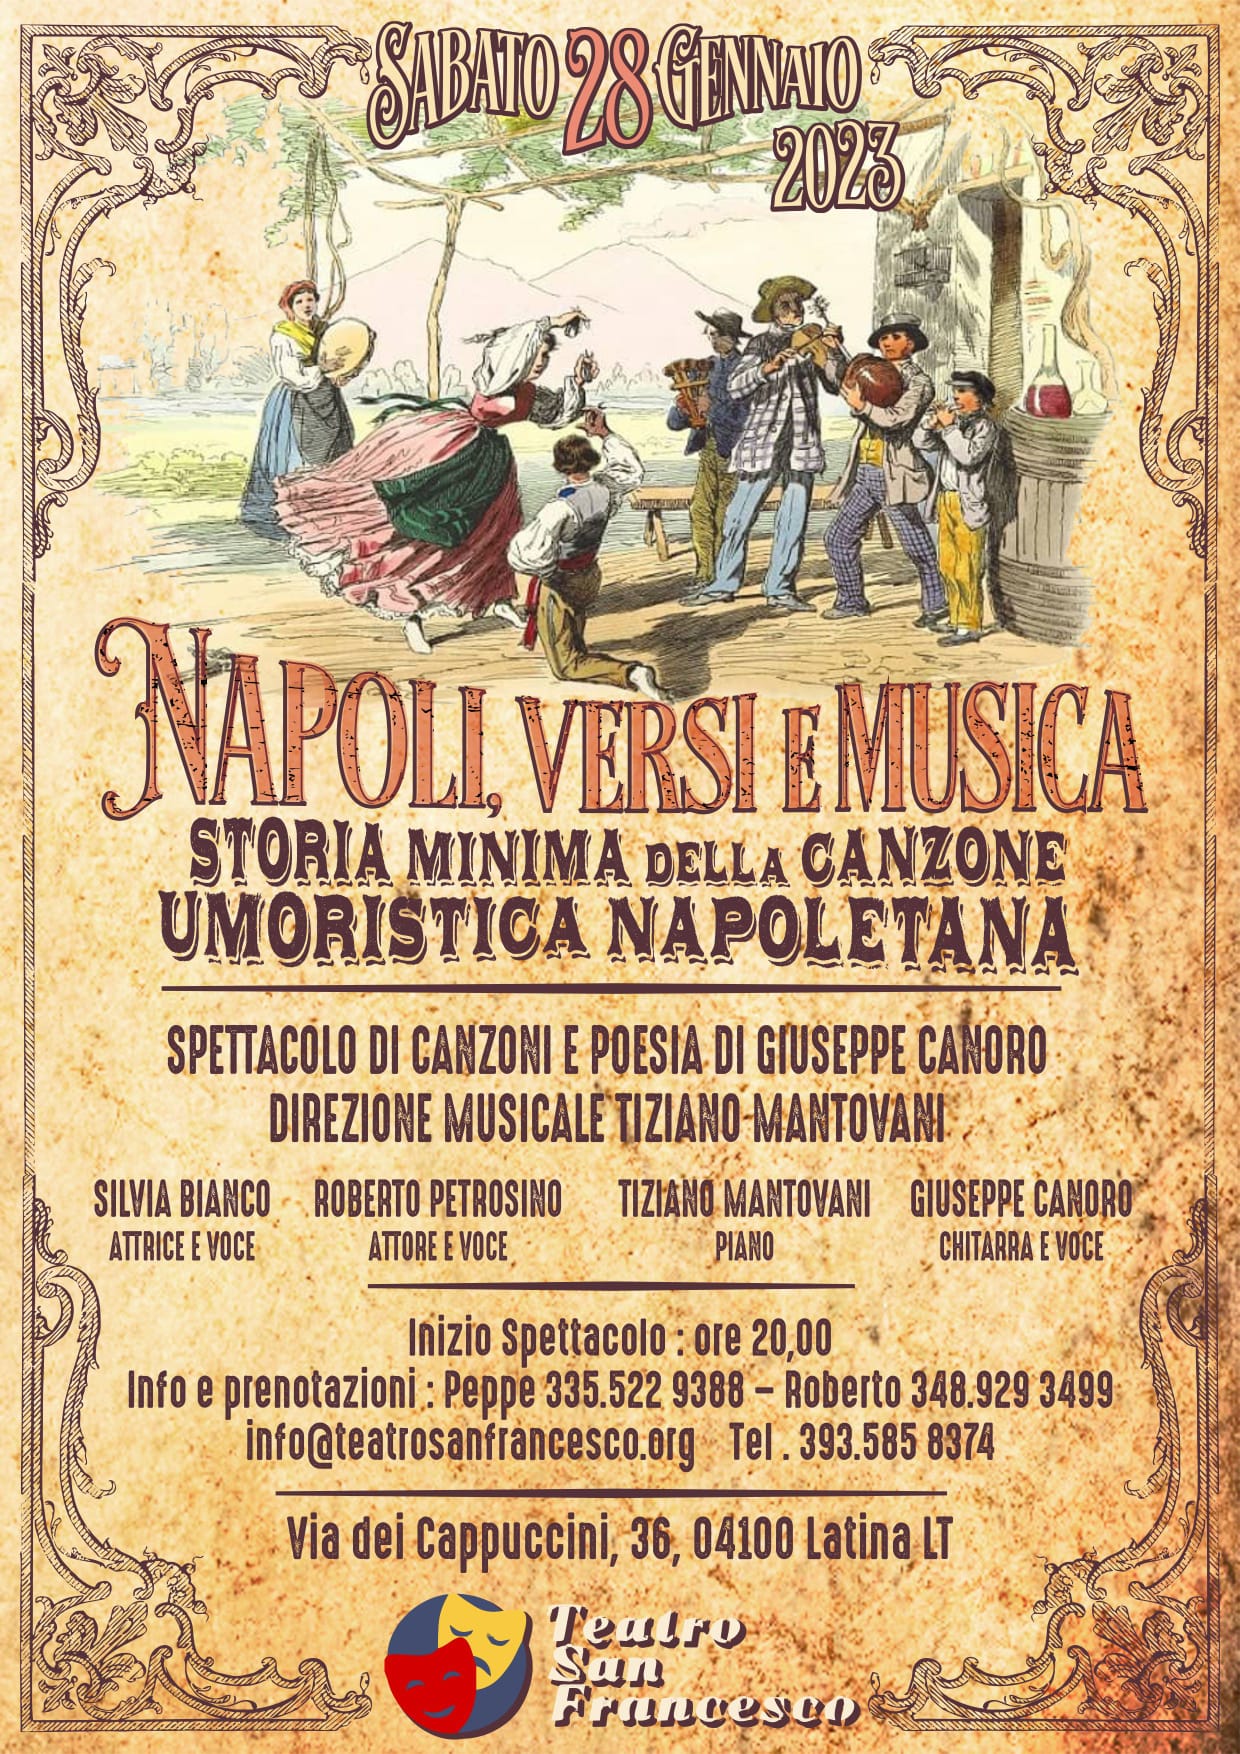 Napoli, versi e musica: Storia minima della canzone umoristica napoletana